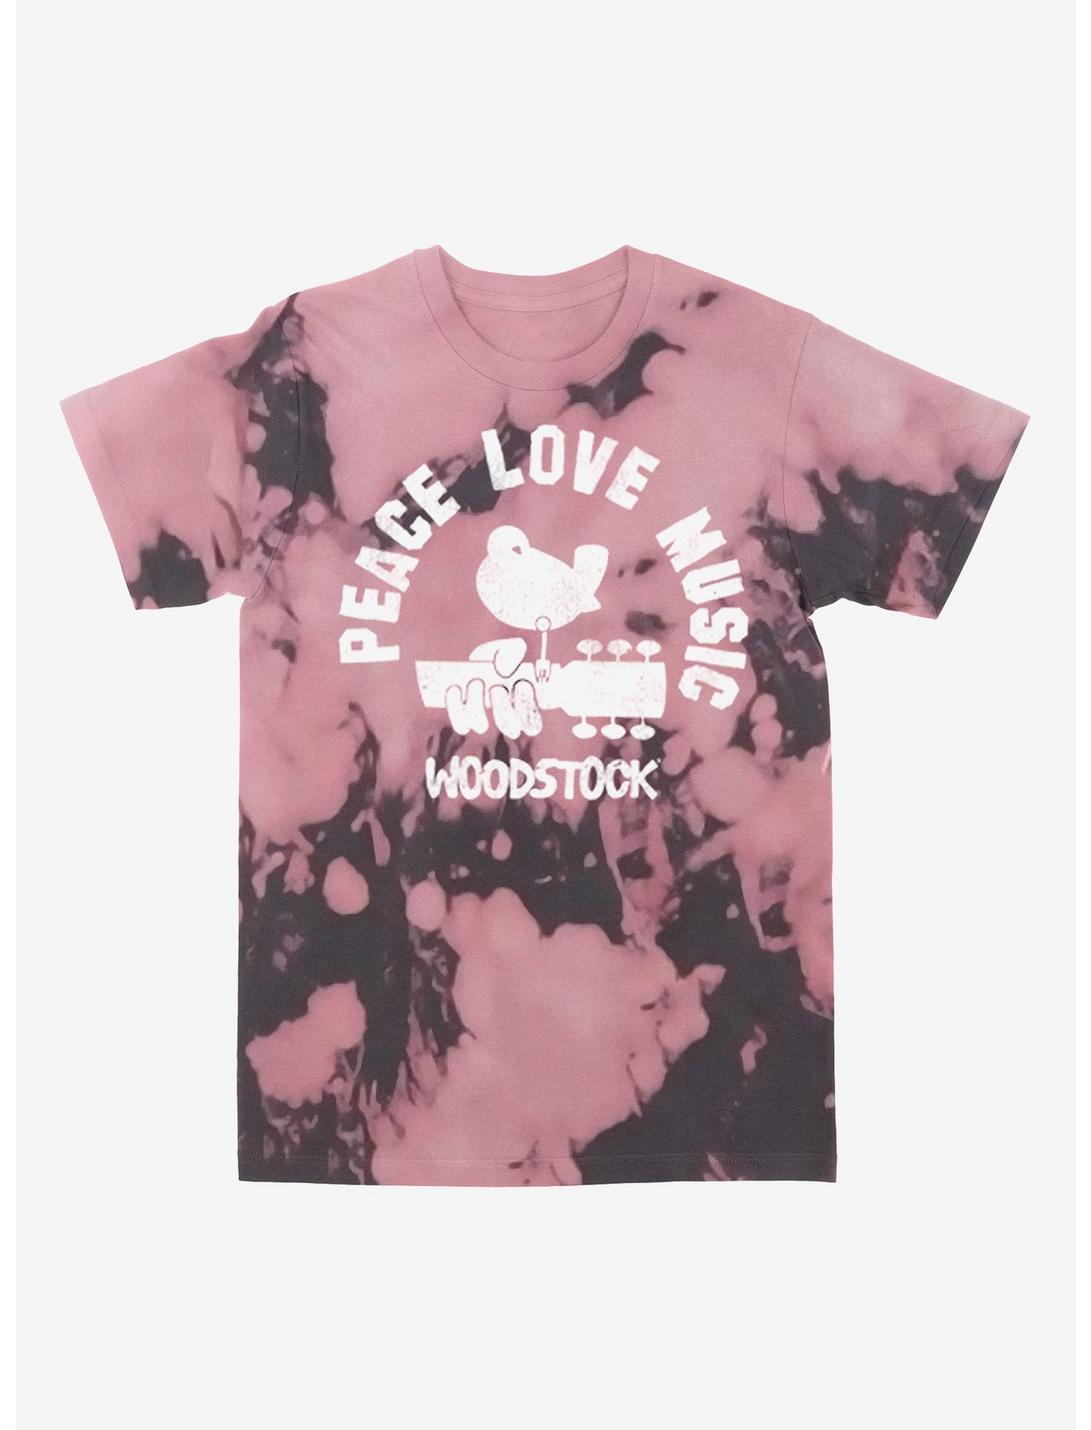 Woodstock Tie-Dye Boyfriend Fit Girls T-Shirt, MULTI, hi-res